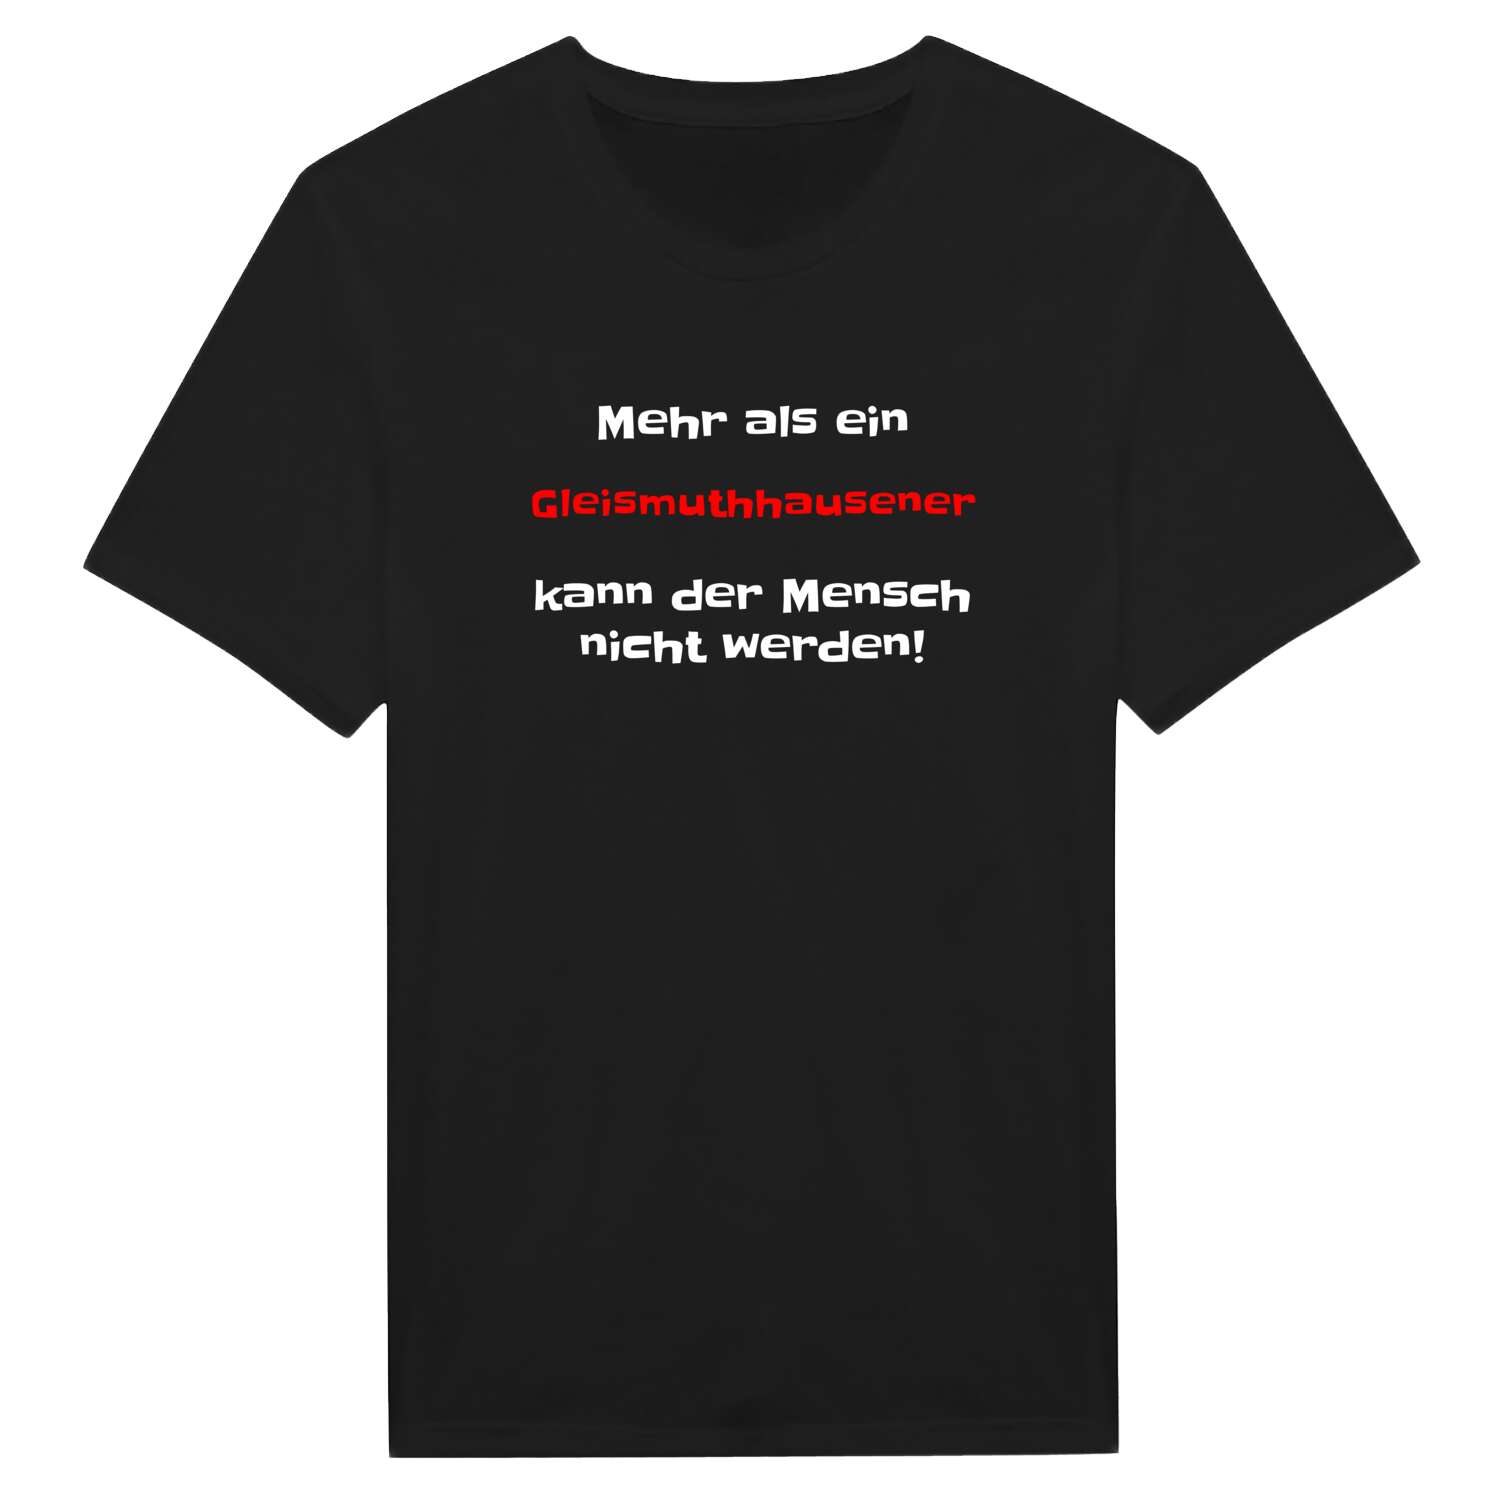 Gleismuthhausen T-Shirt »Mehr als ein«